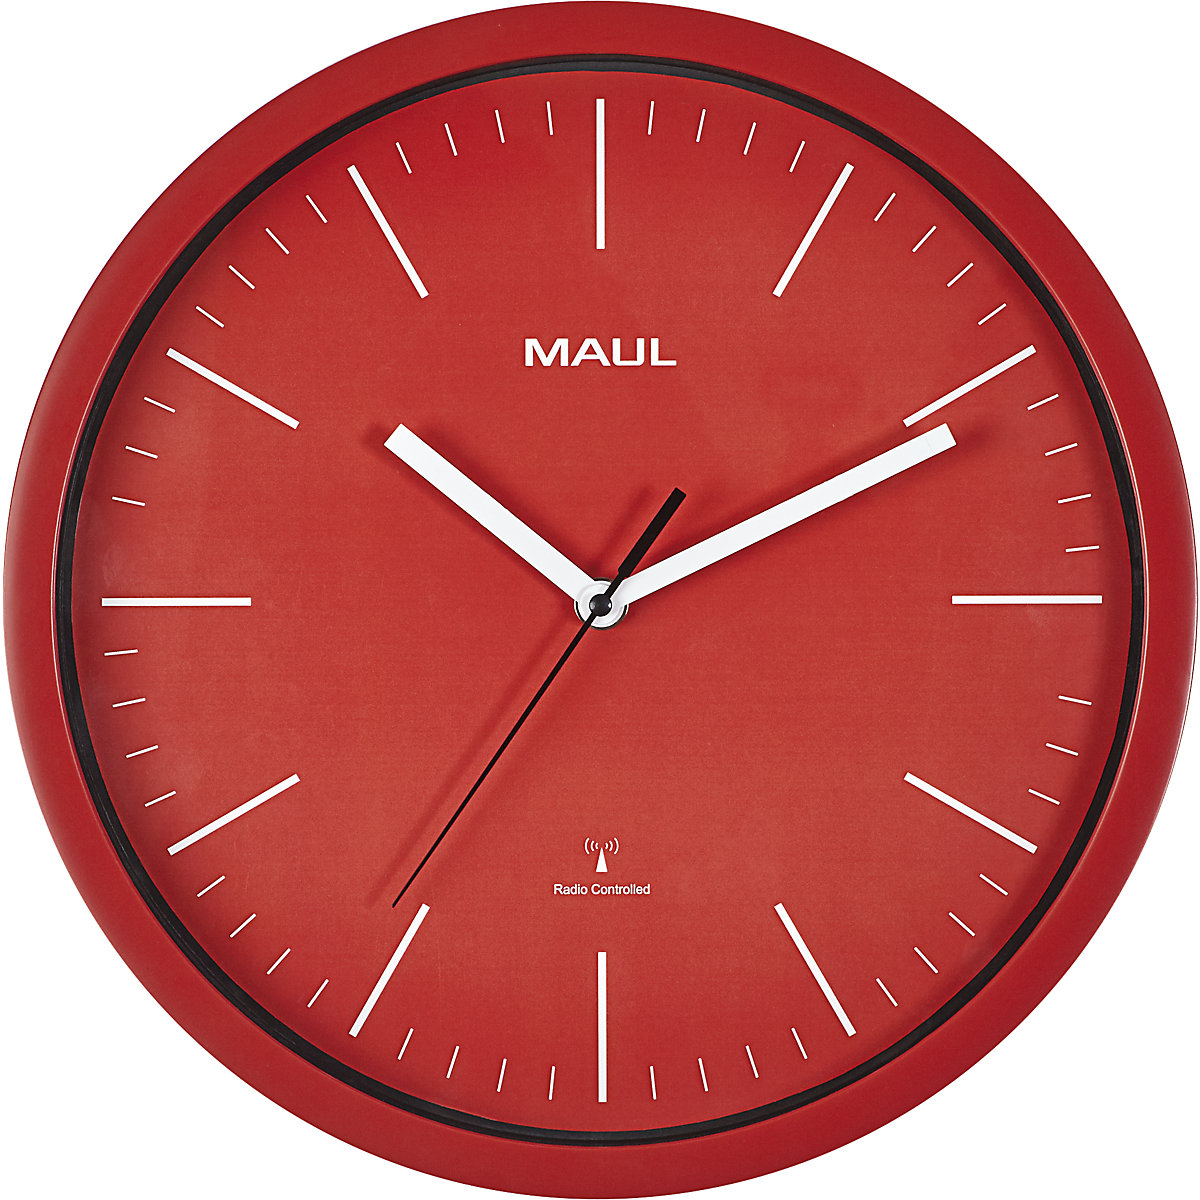 Orologio da parete MAULjump – MAUL, orologio radiocontrollato, rosso-1